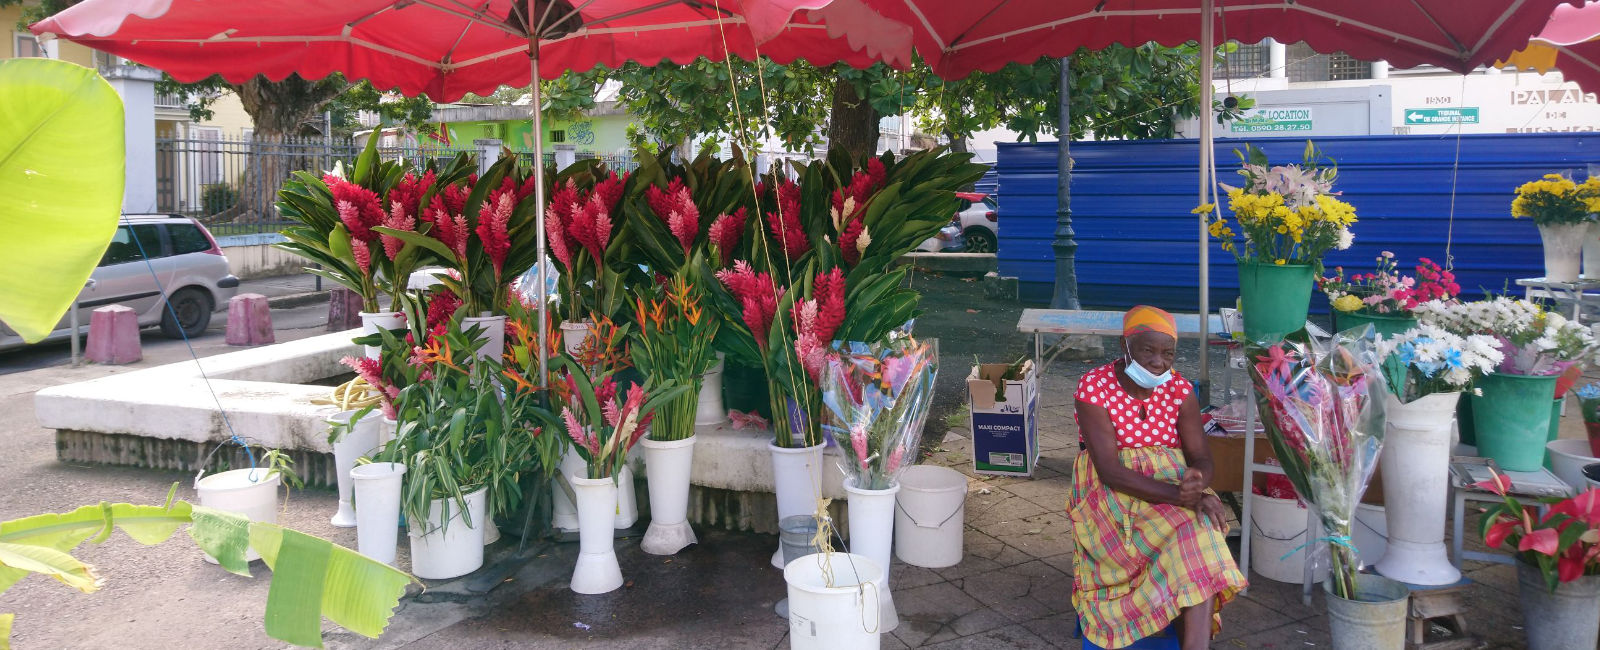 Le marché aux fleurs 